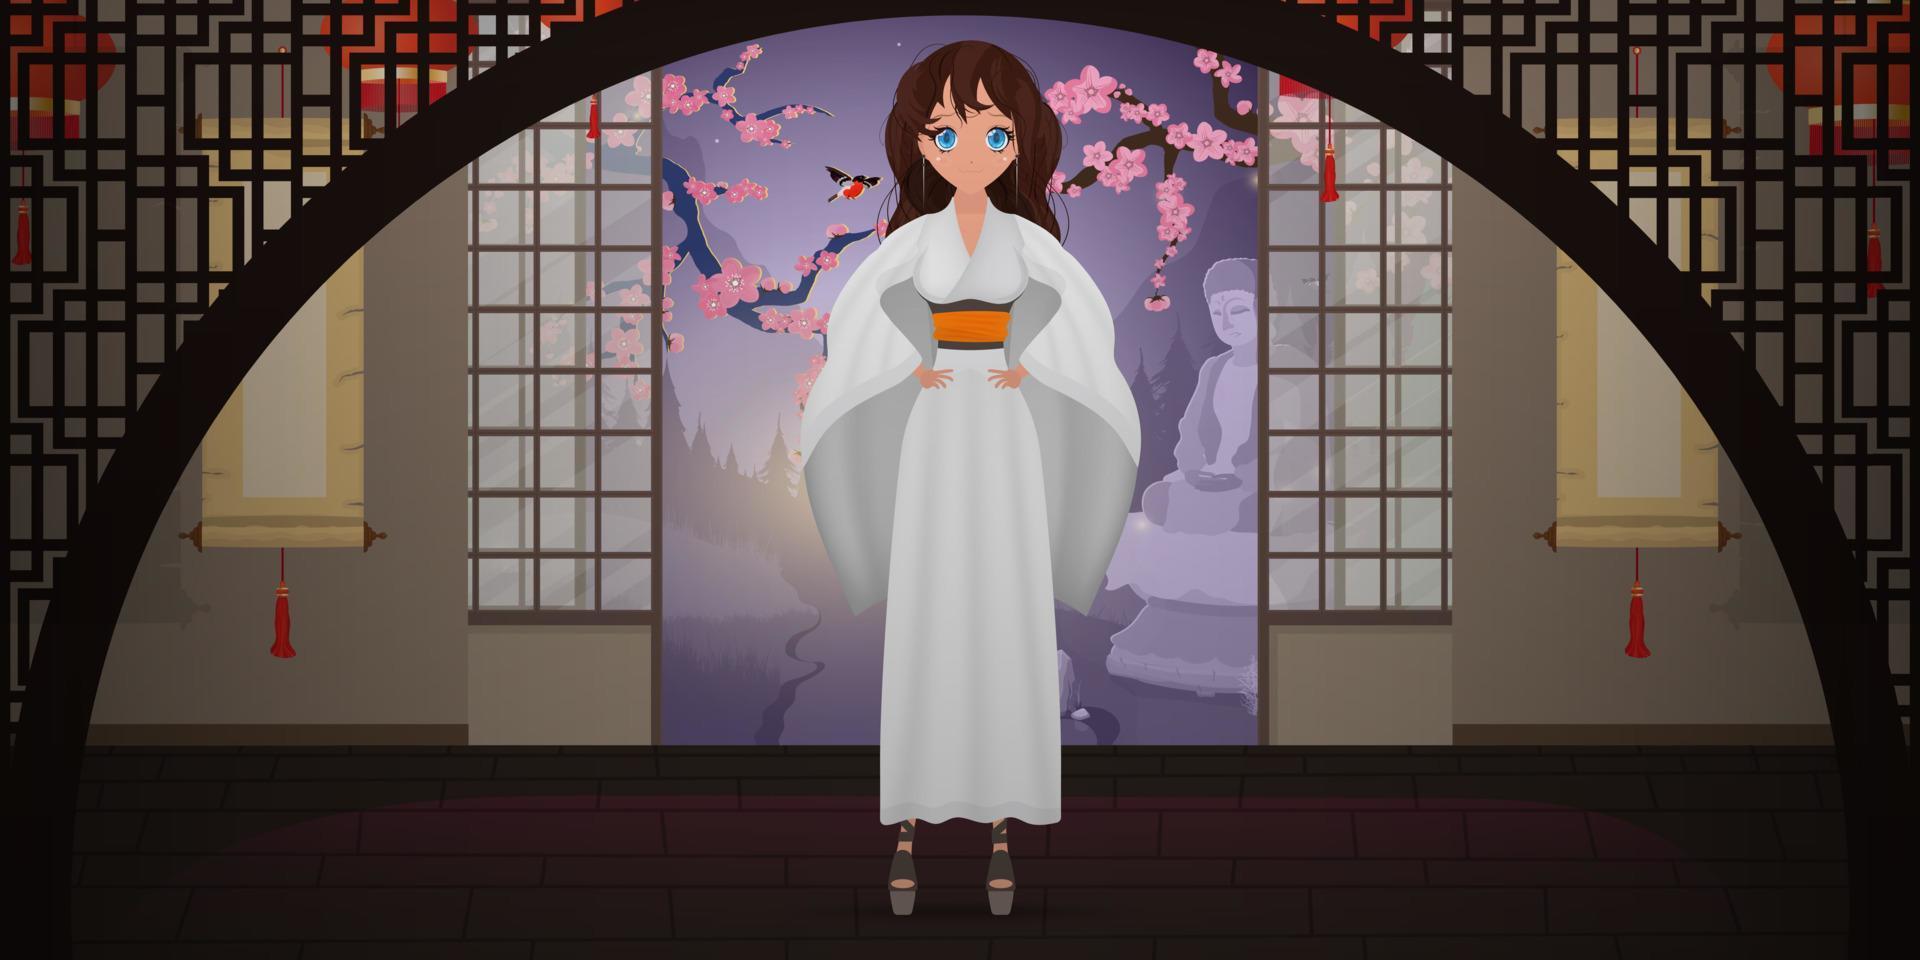 vrouwen in een lange witte zijden kimono, zomerkimono, zijden huiskleding, bruidsmeisjeskleding, natuurlijk gewaad. cartoon-stijl. vectorillustratie. vector